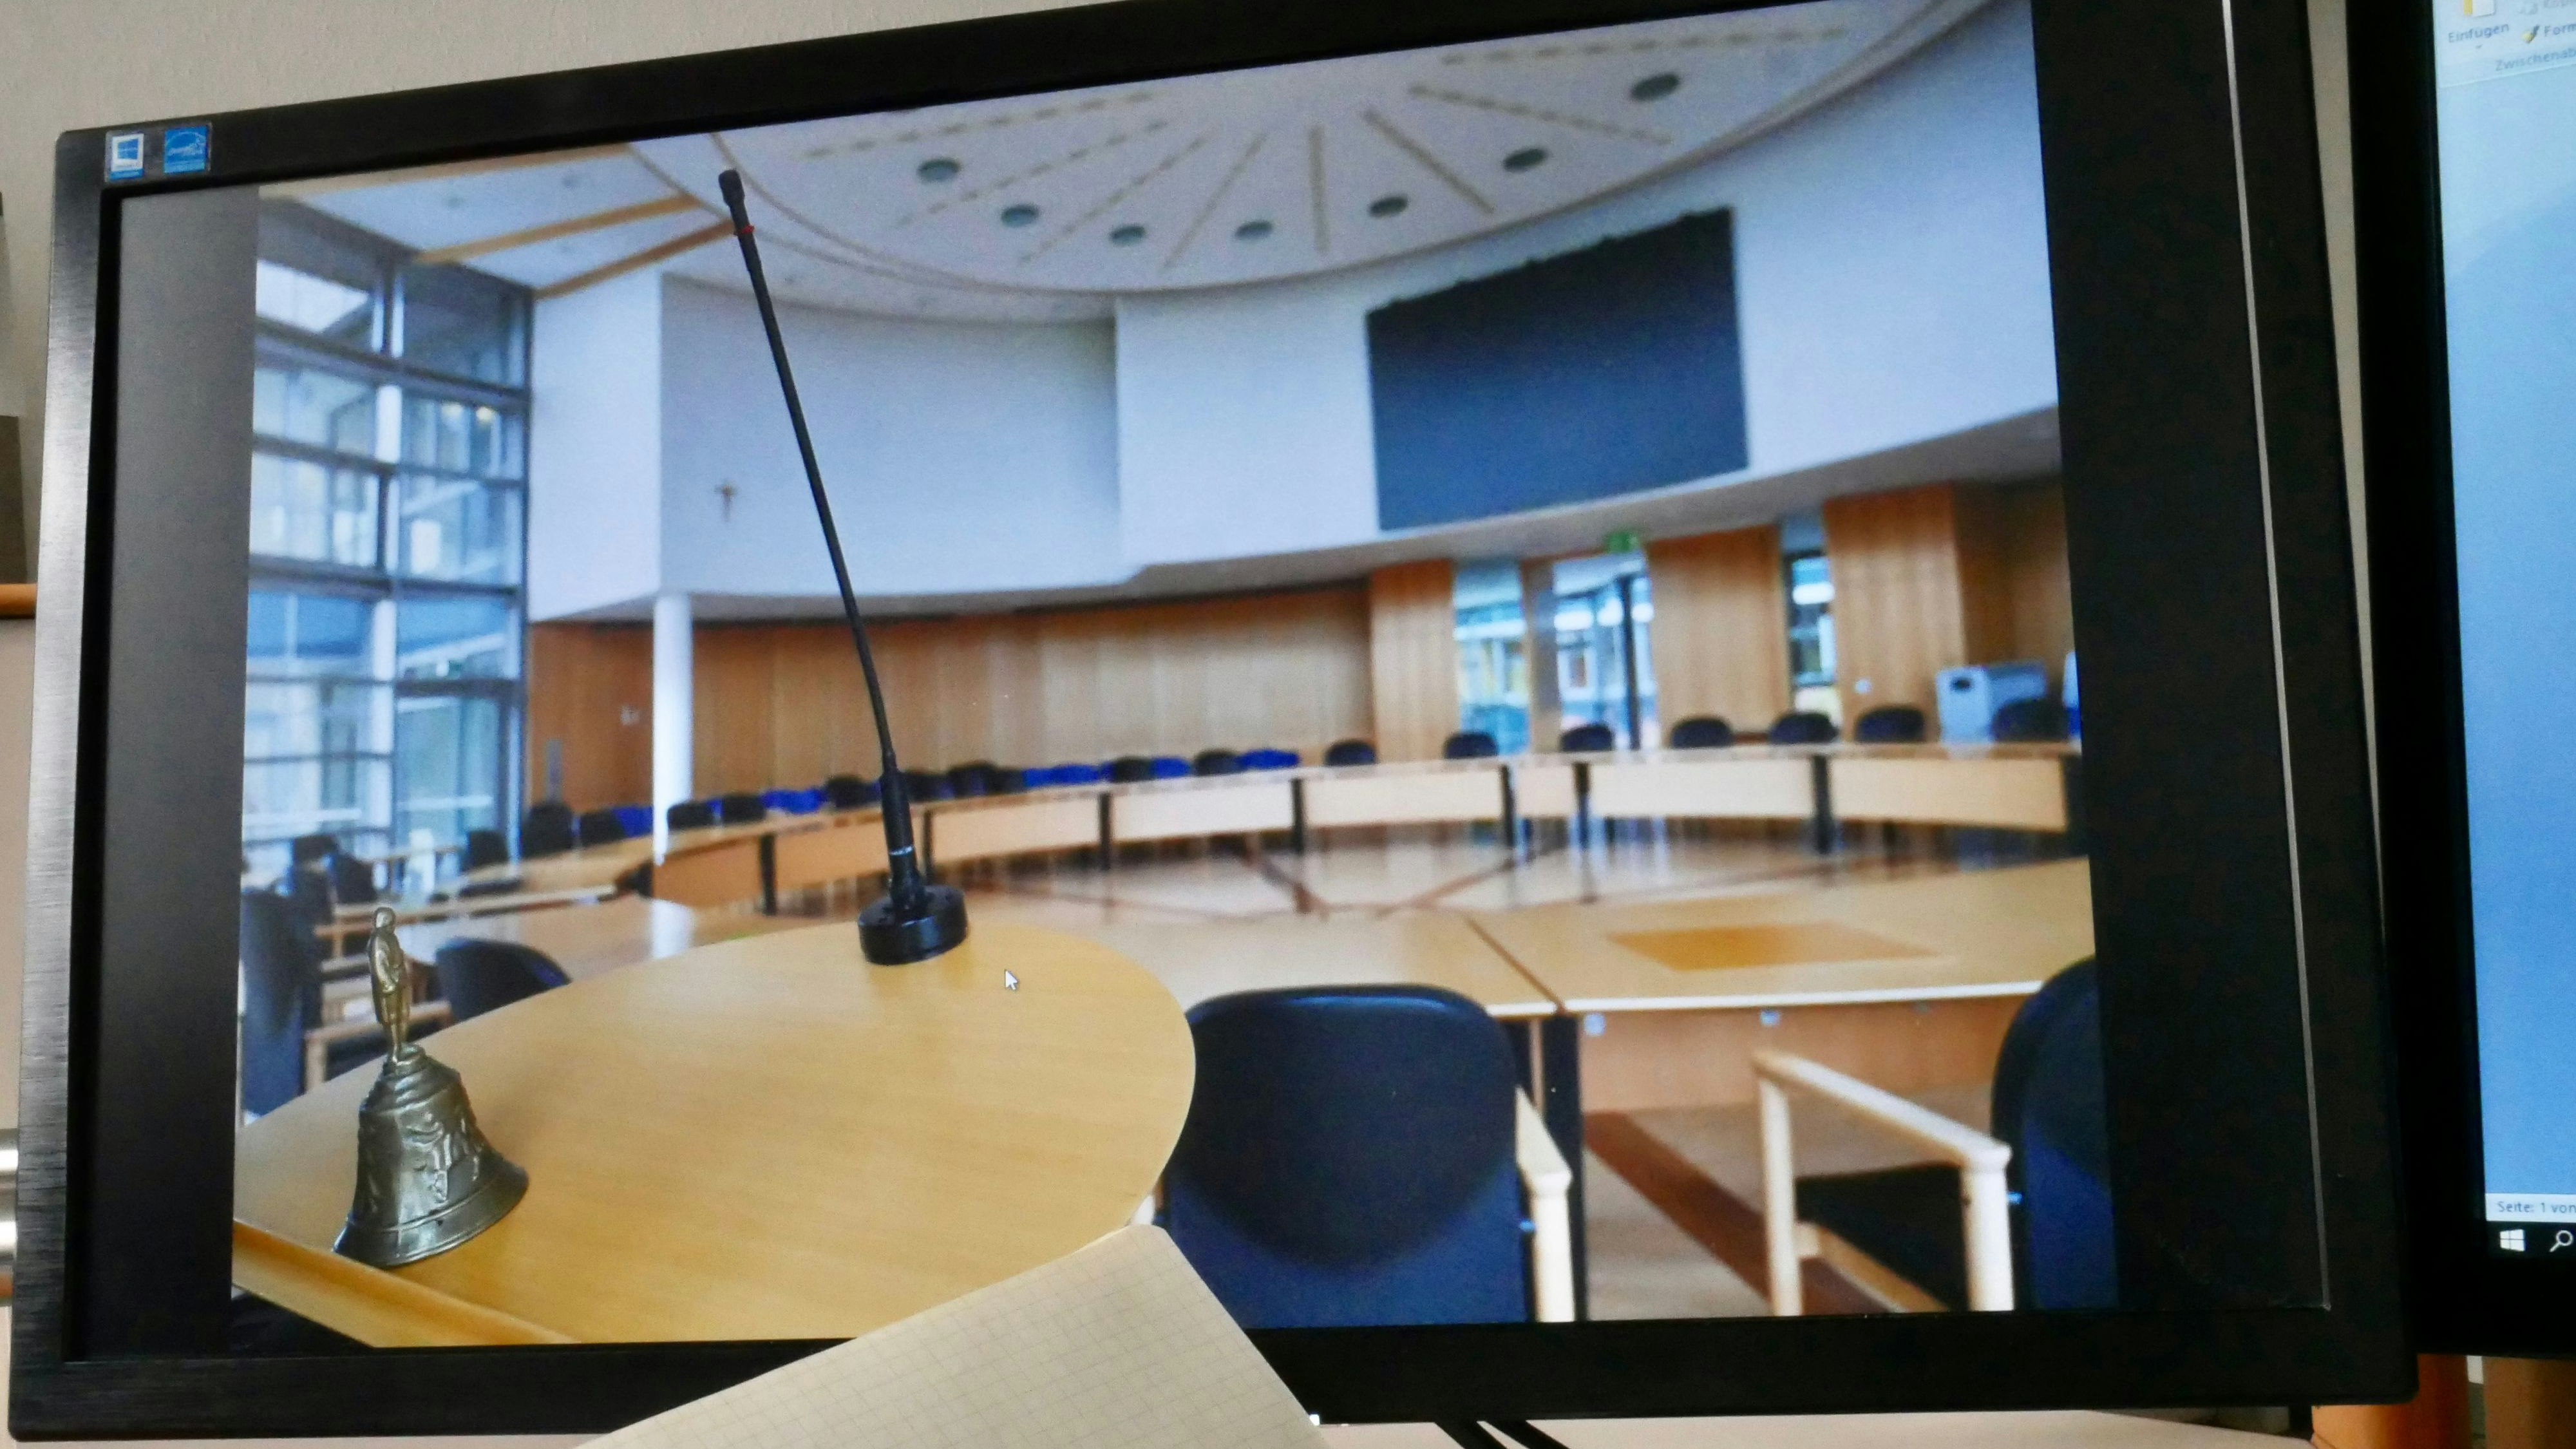 Ratssaal im Videostream: Künftig sollen die Sitzungen des Cloppenburger Stadtrates live und auf Abruf am Bildschirm verfolgt werden. Foto: Dickerhoff